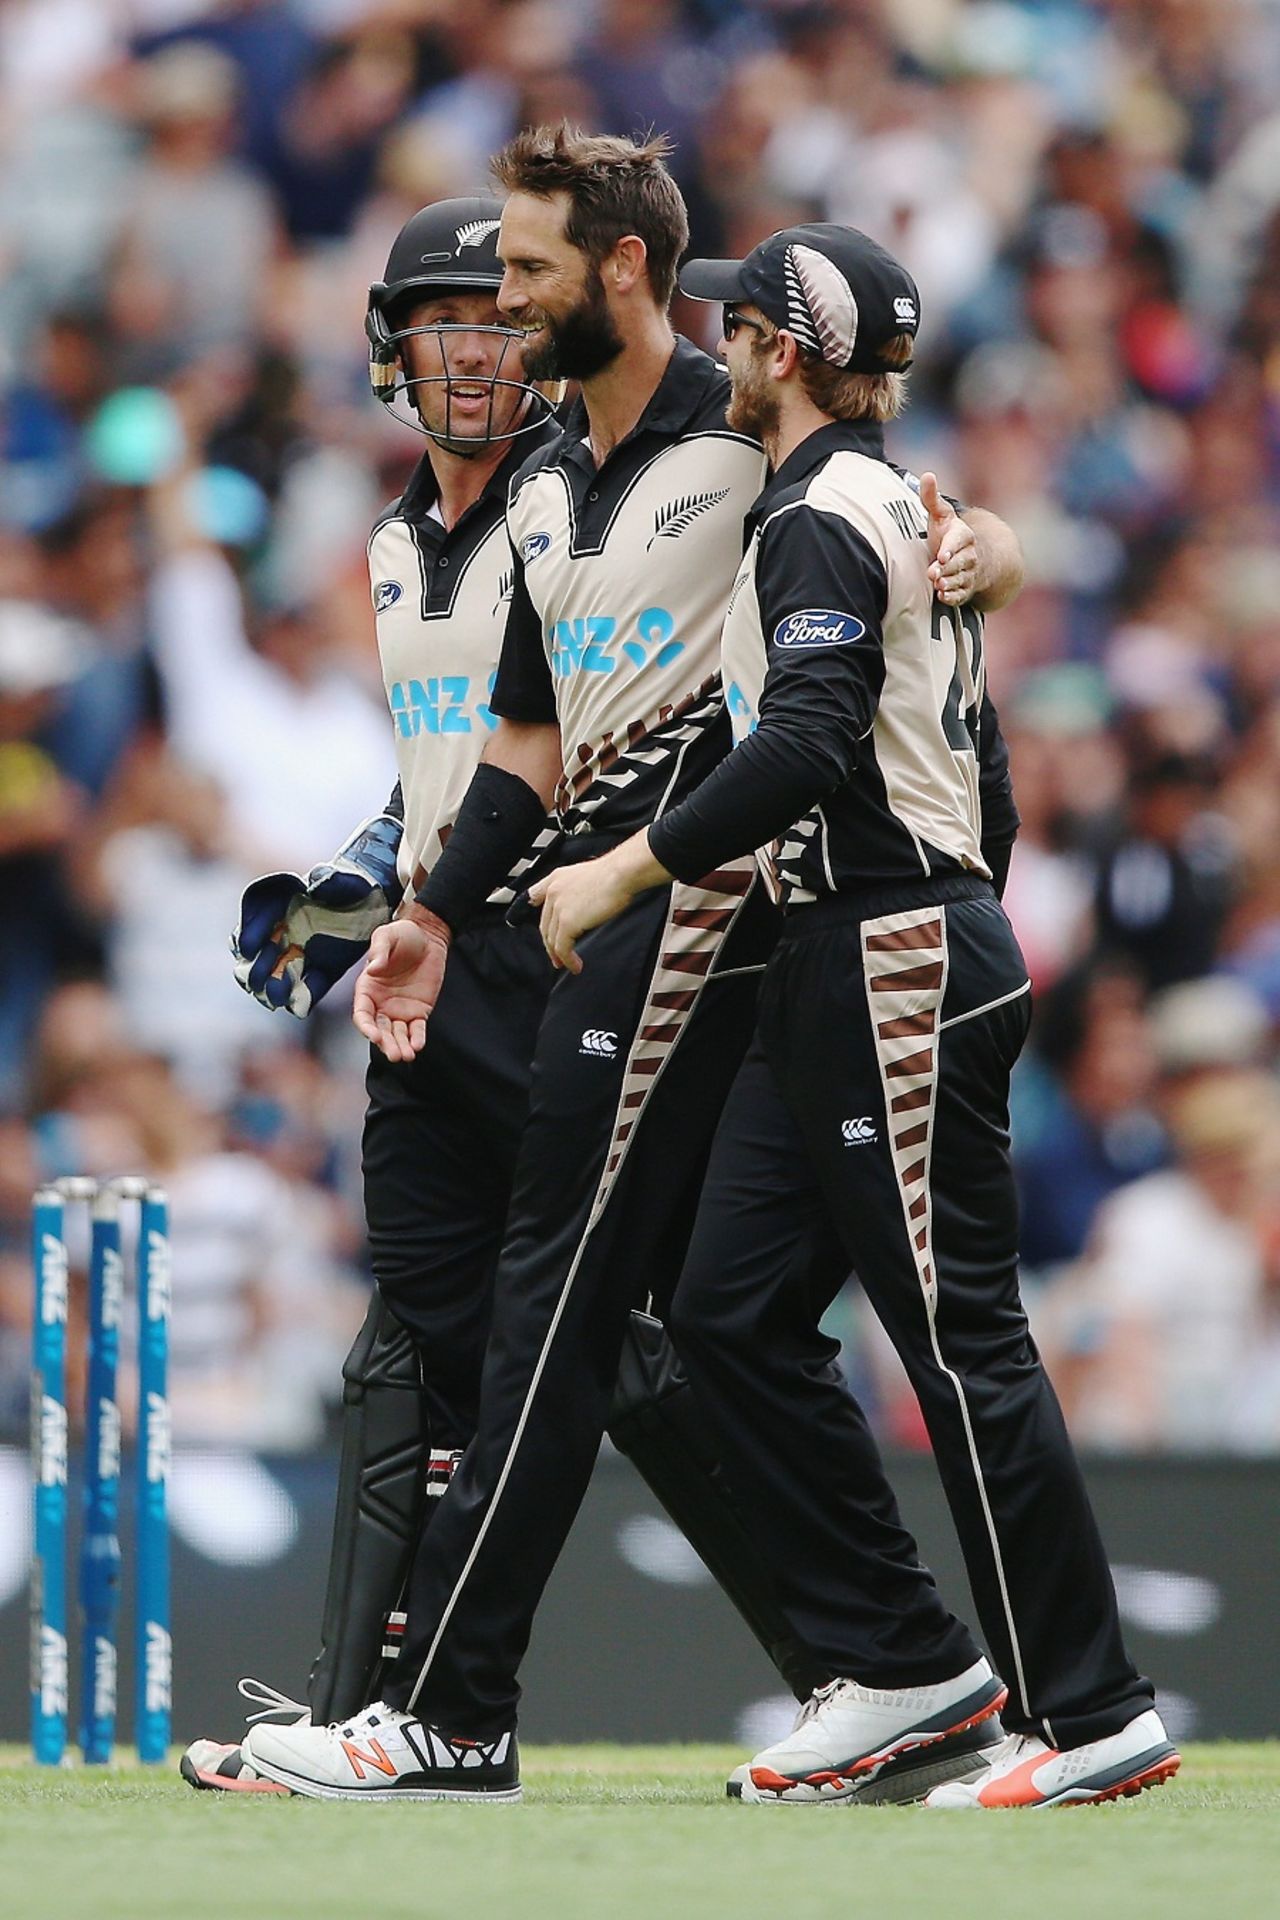 Grant Elliott celebrates a wicket with Kane Williamson and Luke Ronchi, New Zealand v Sri Lanka, 2nd T20I, Auckland, January 10, 2016